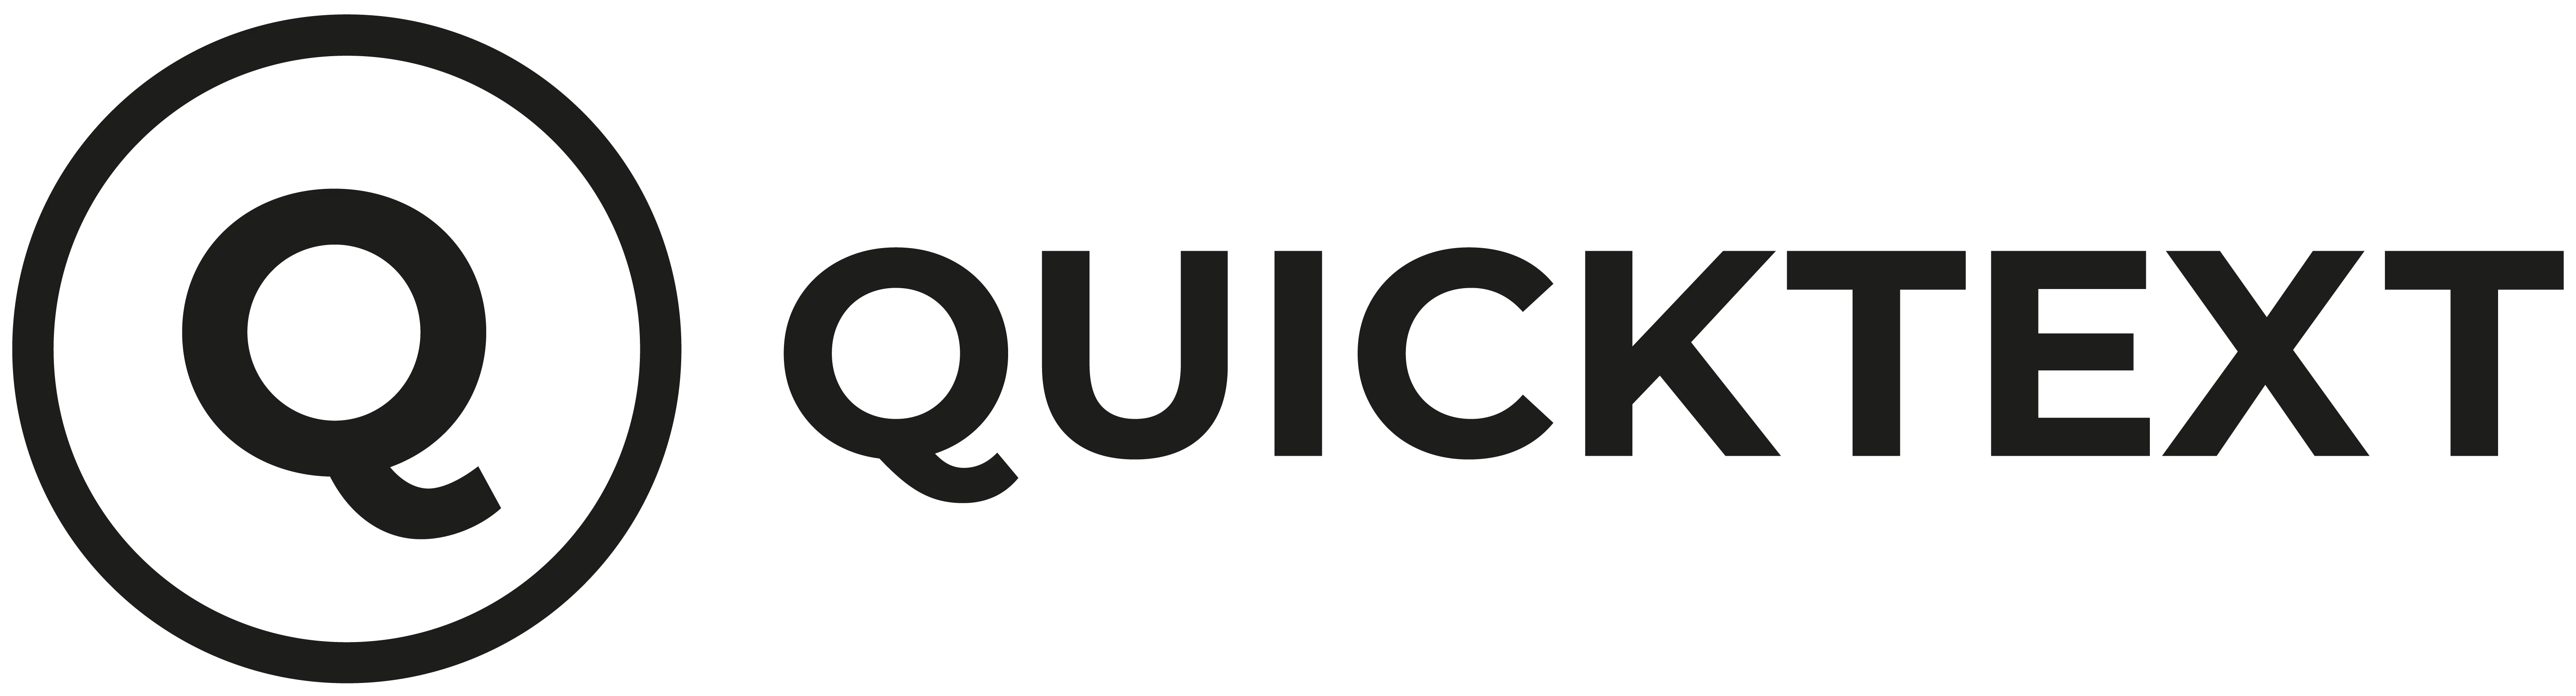 Bowo • QuickText logo